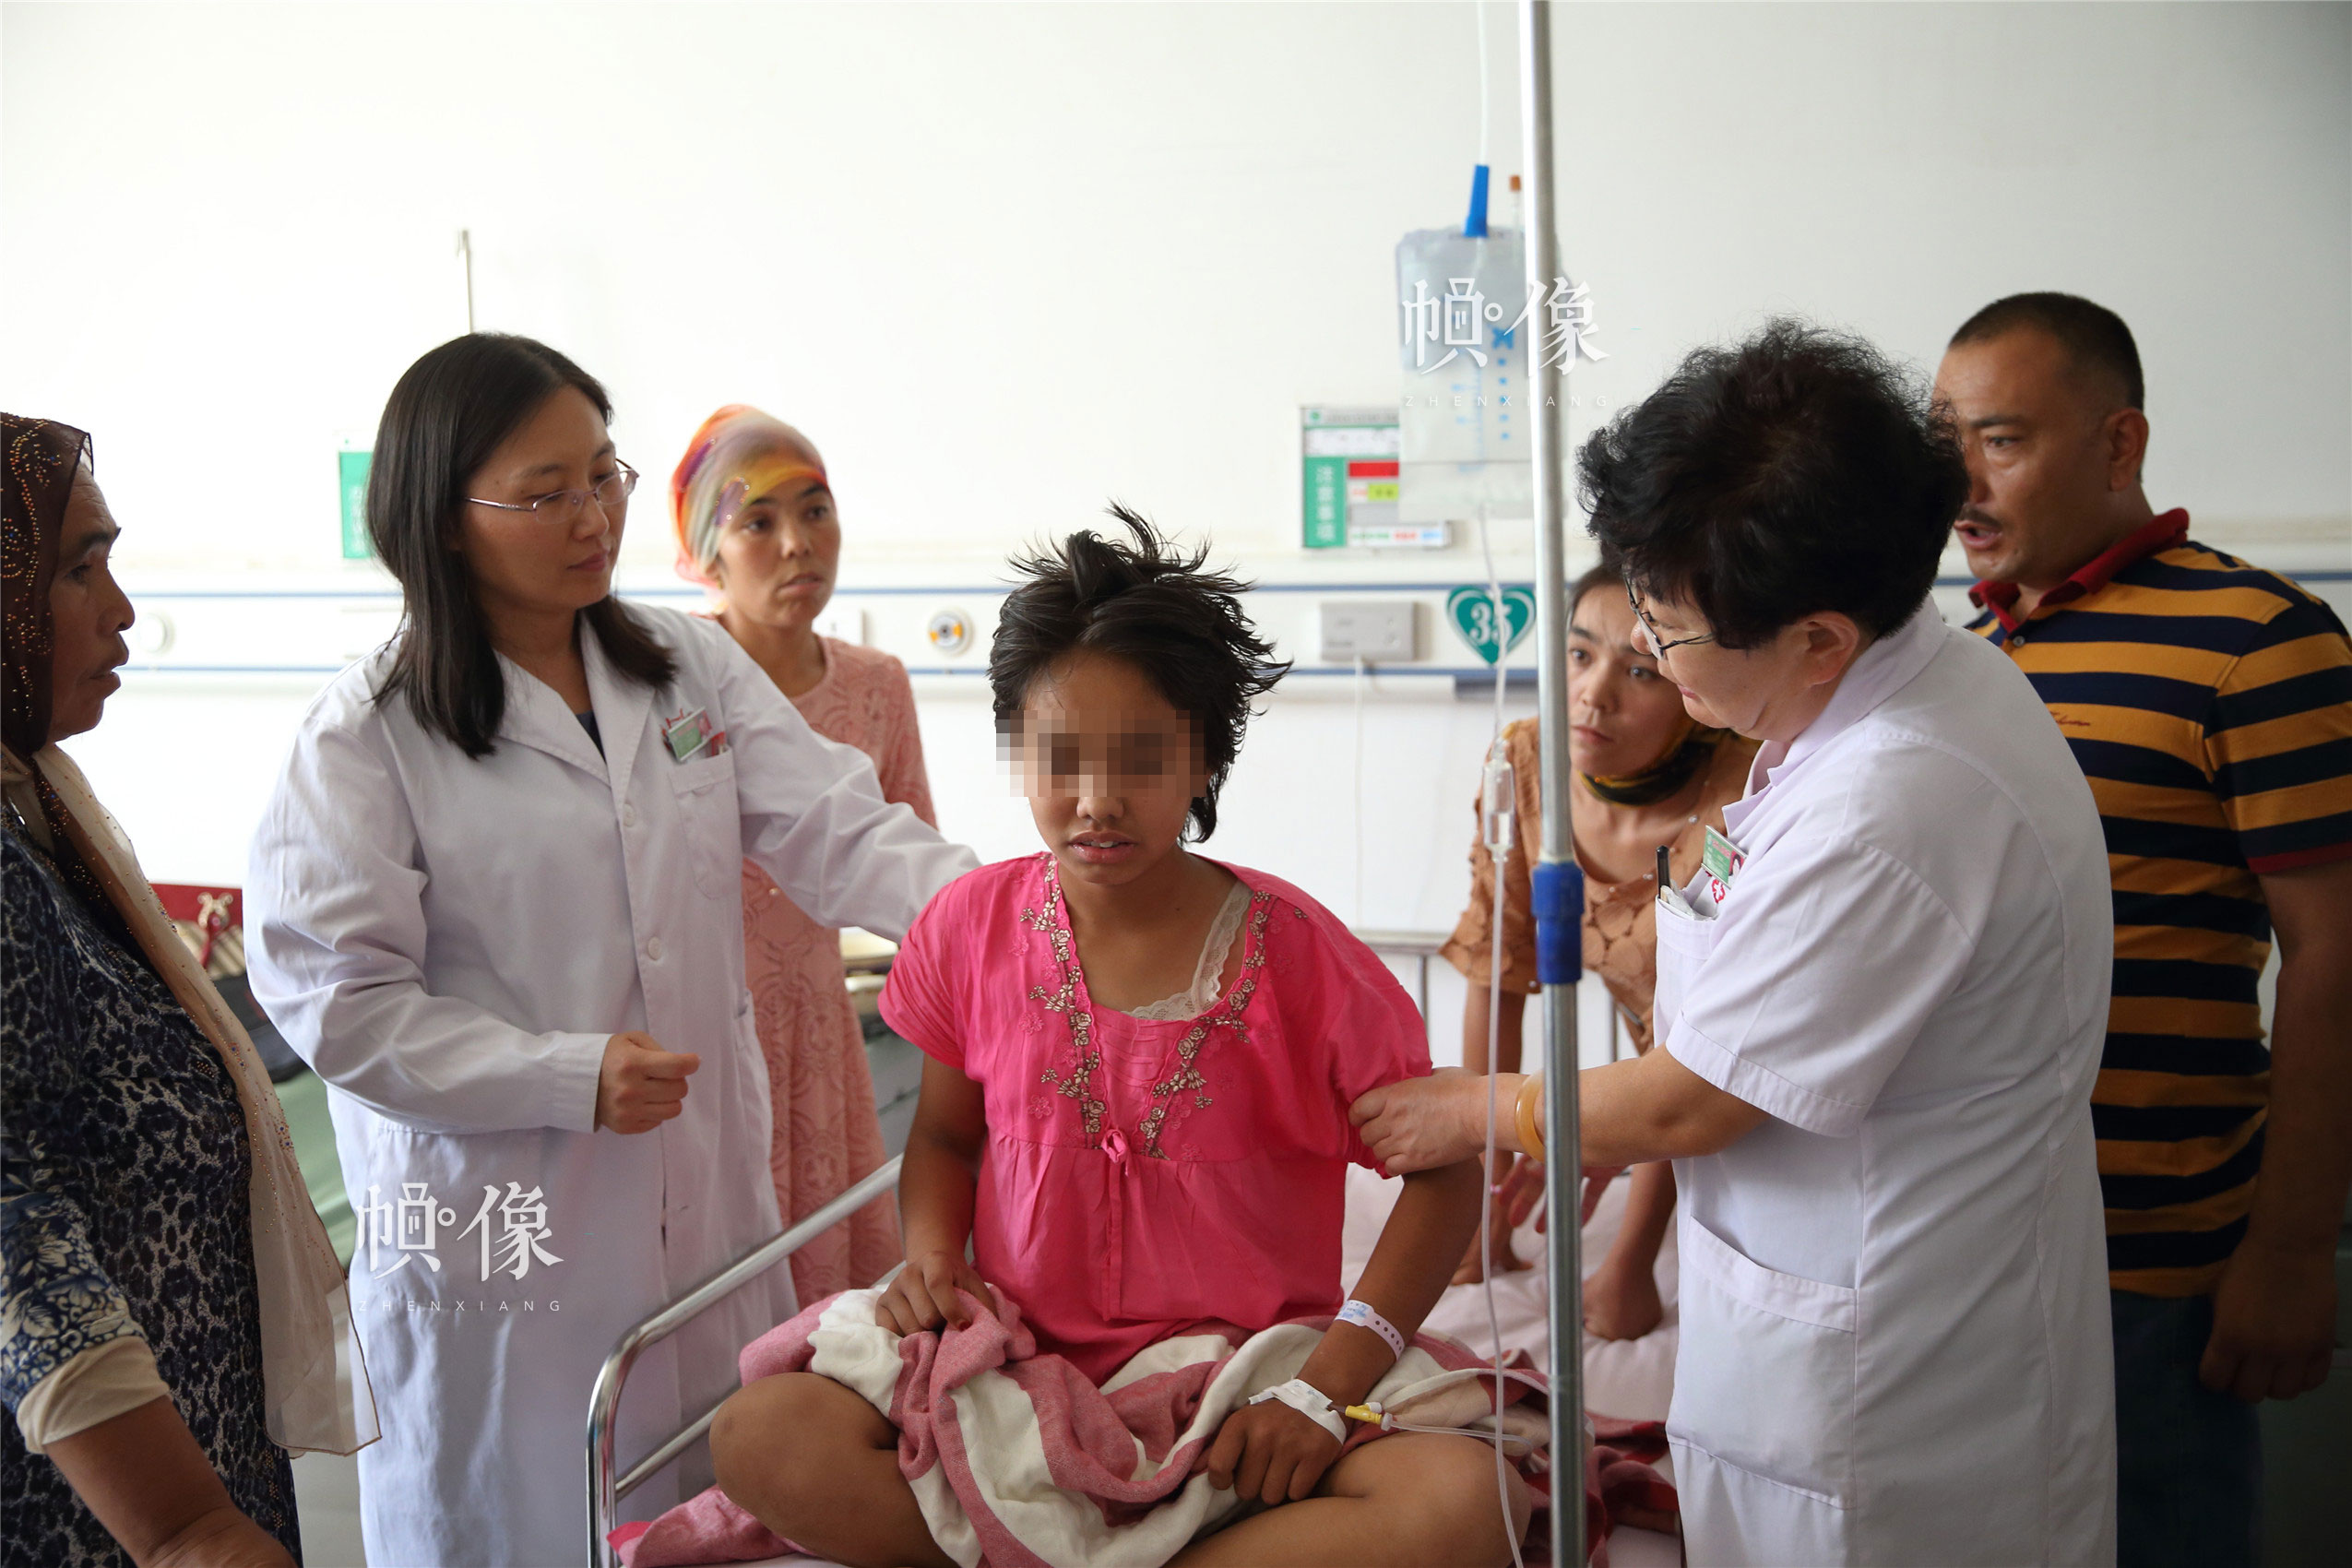 “全国儿科医师培训项目”专家走进病房，为当地儿童患者诊治。中国网记者 陈维松 摄